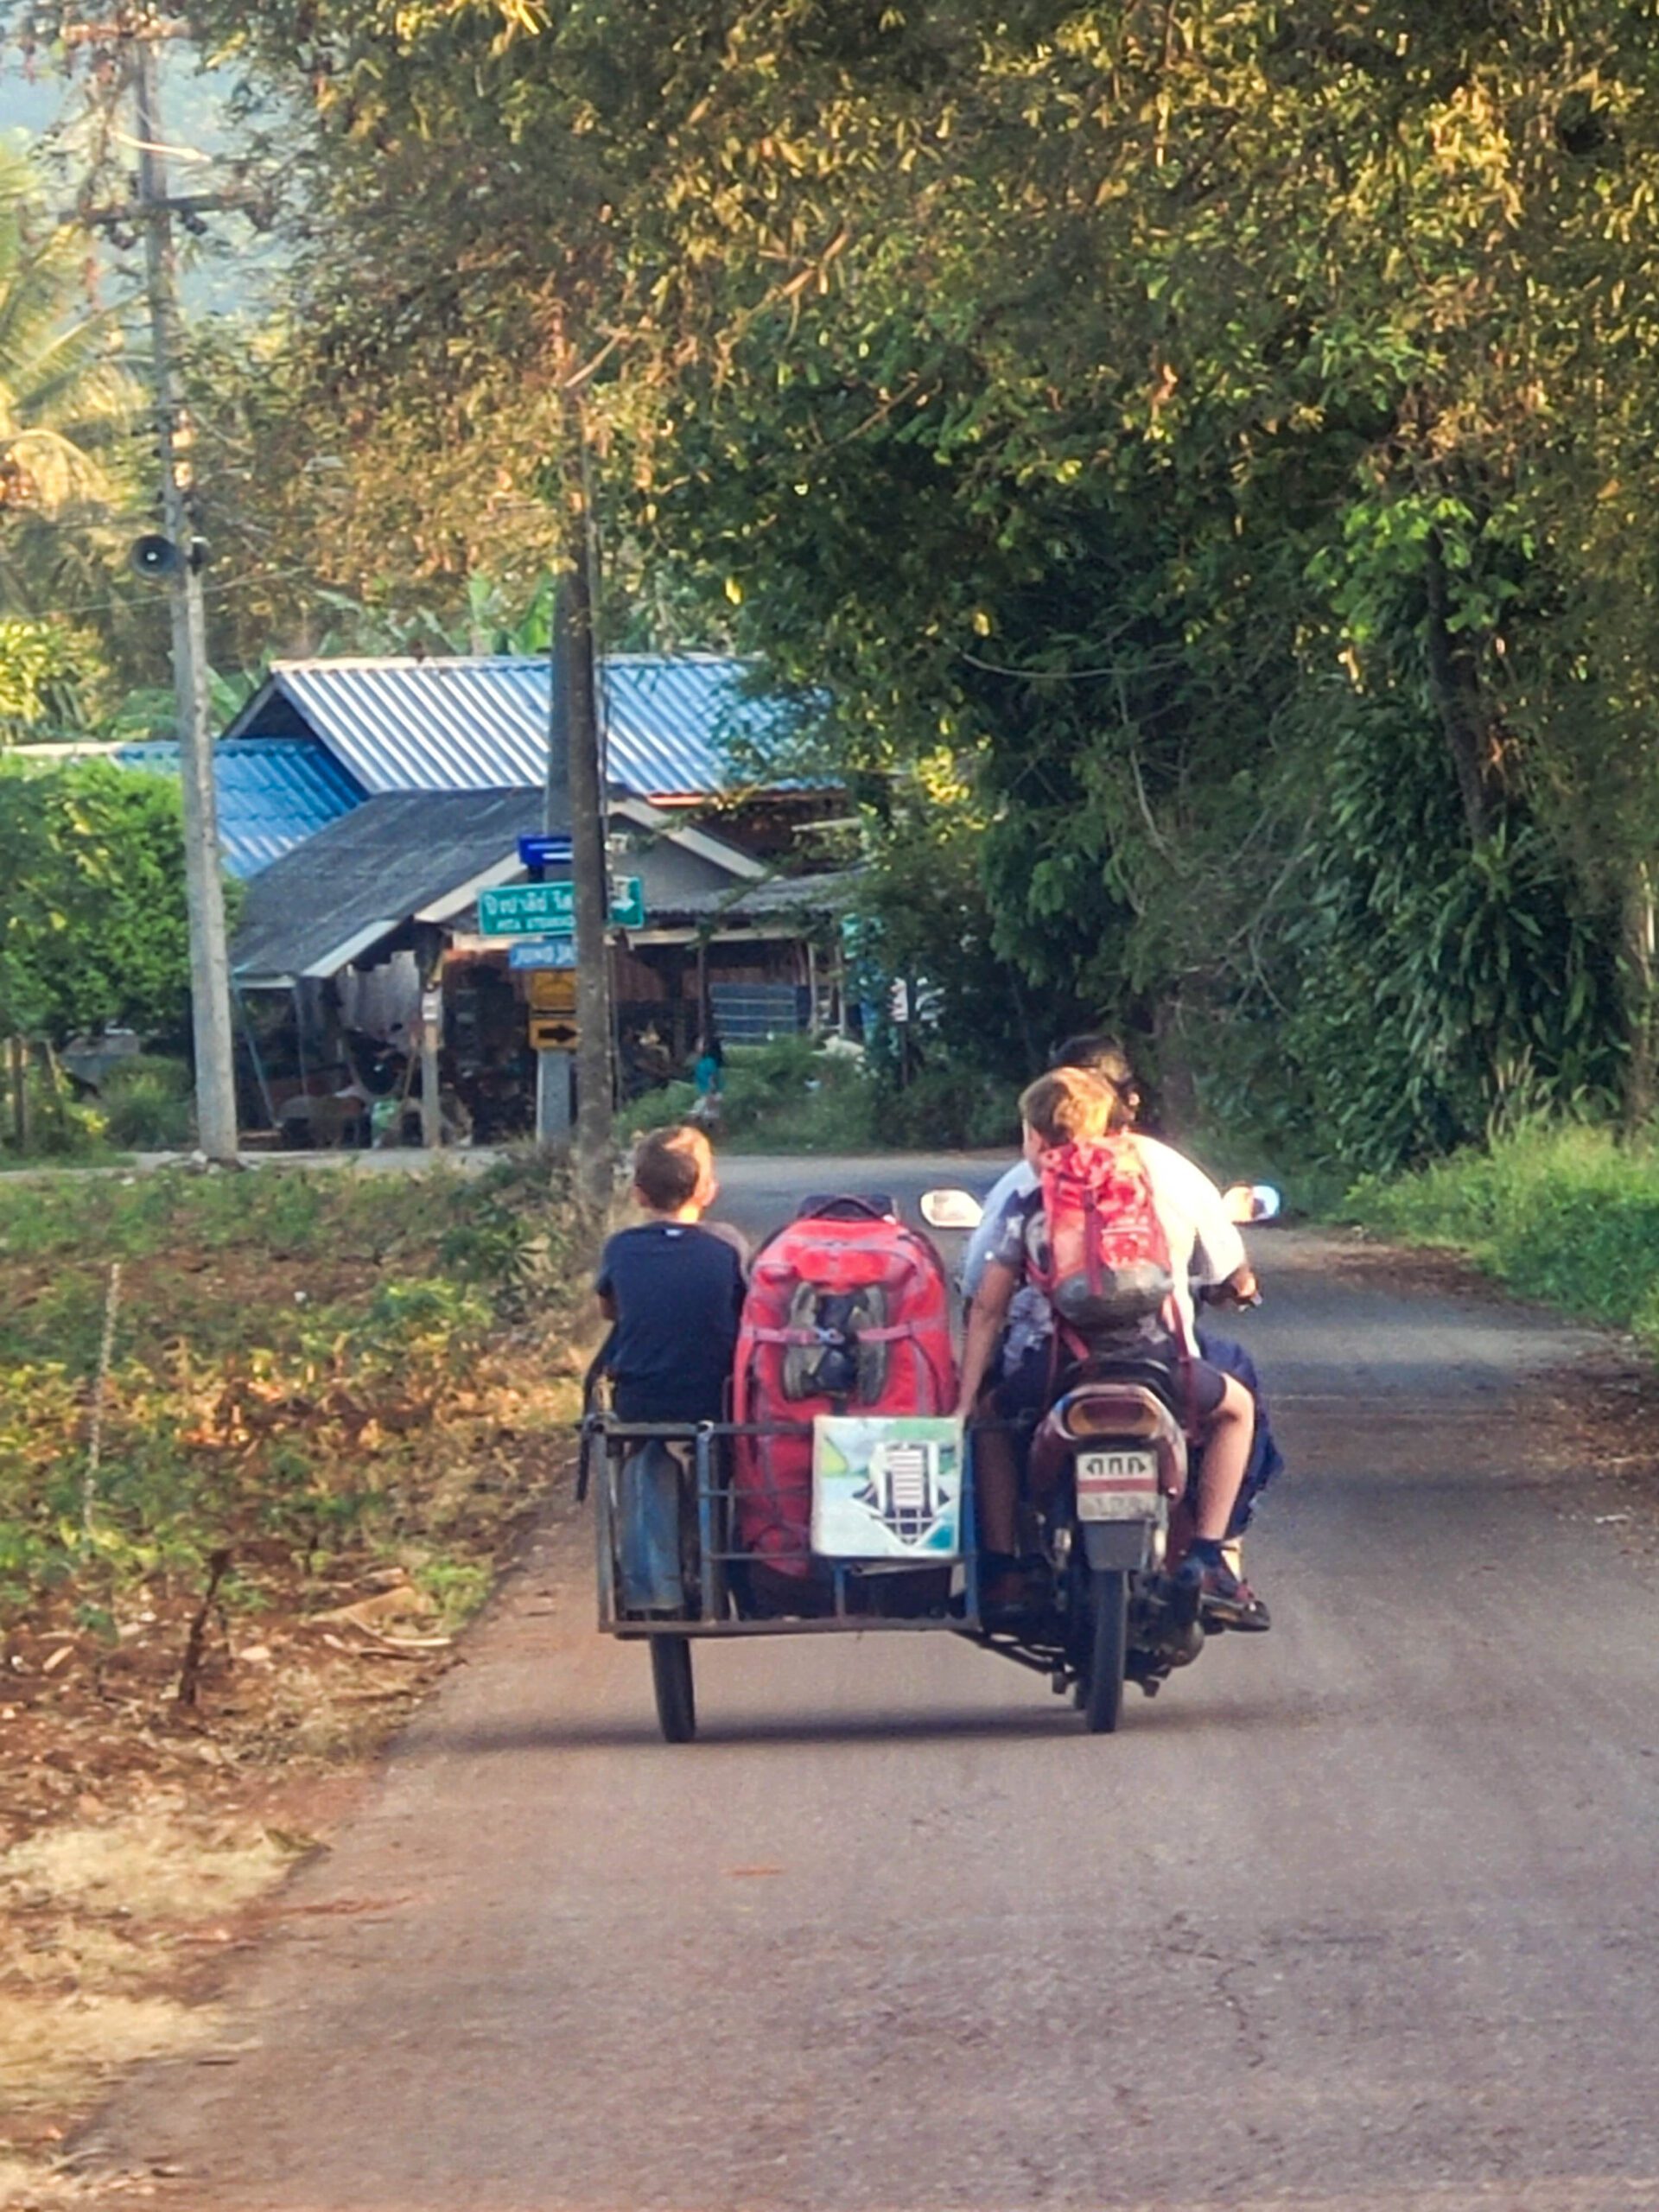 rondreis thailand met kinderen. Geholpen door de locale bevolking